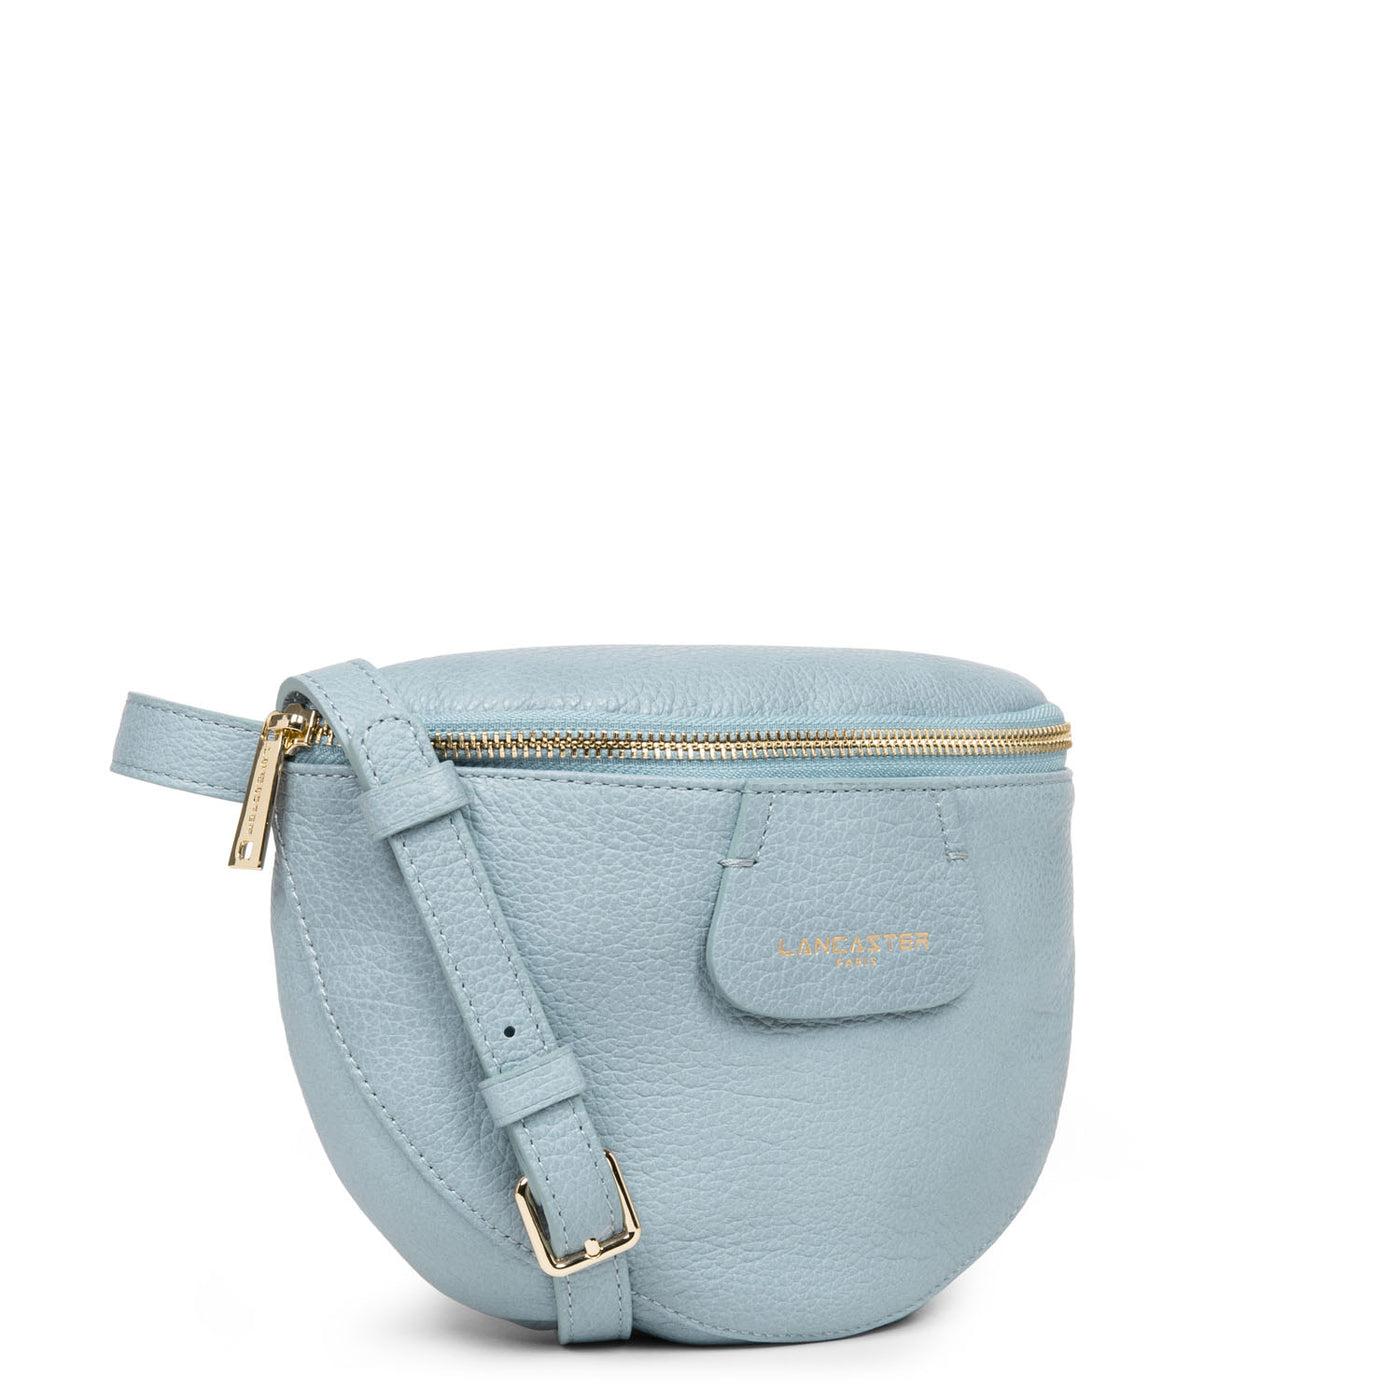 sac porté ceinture - dune #couleur_bleu-cendre